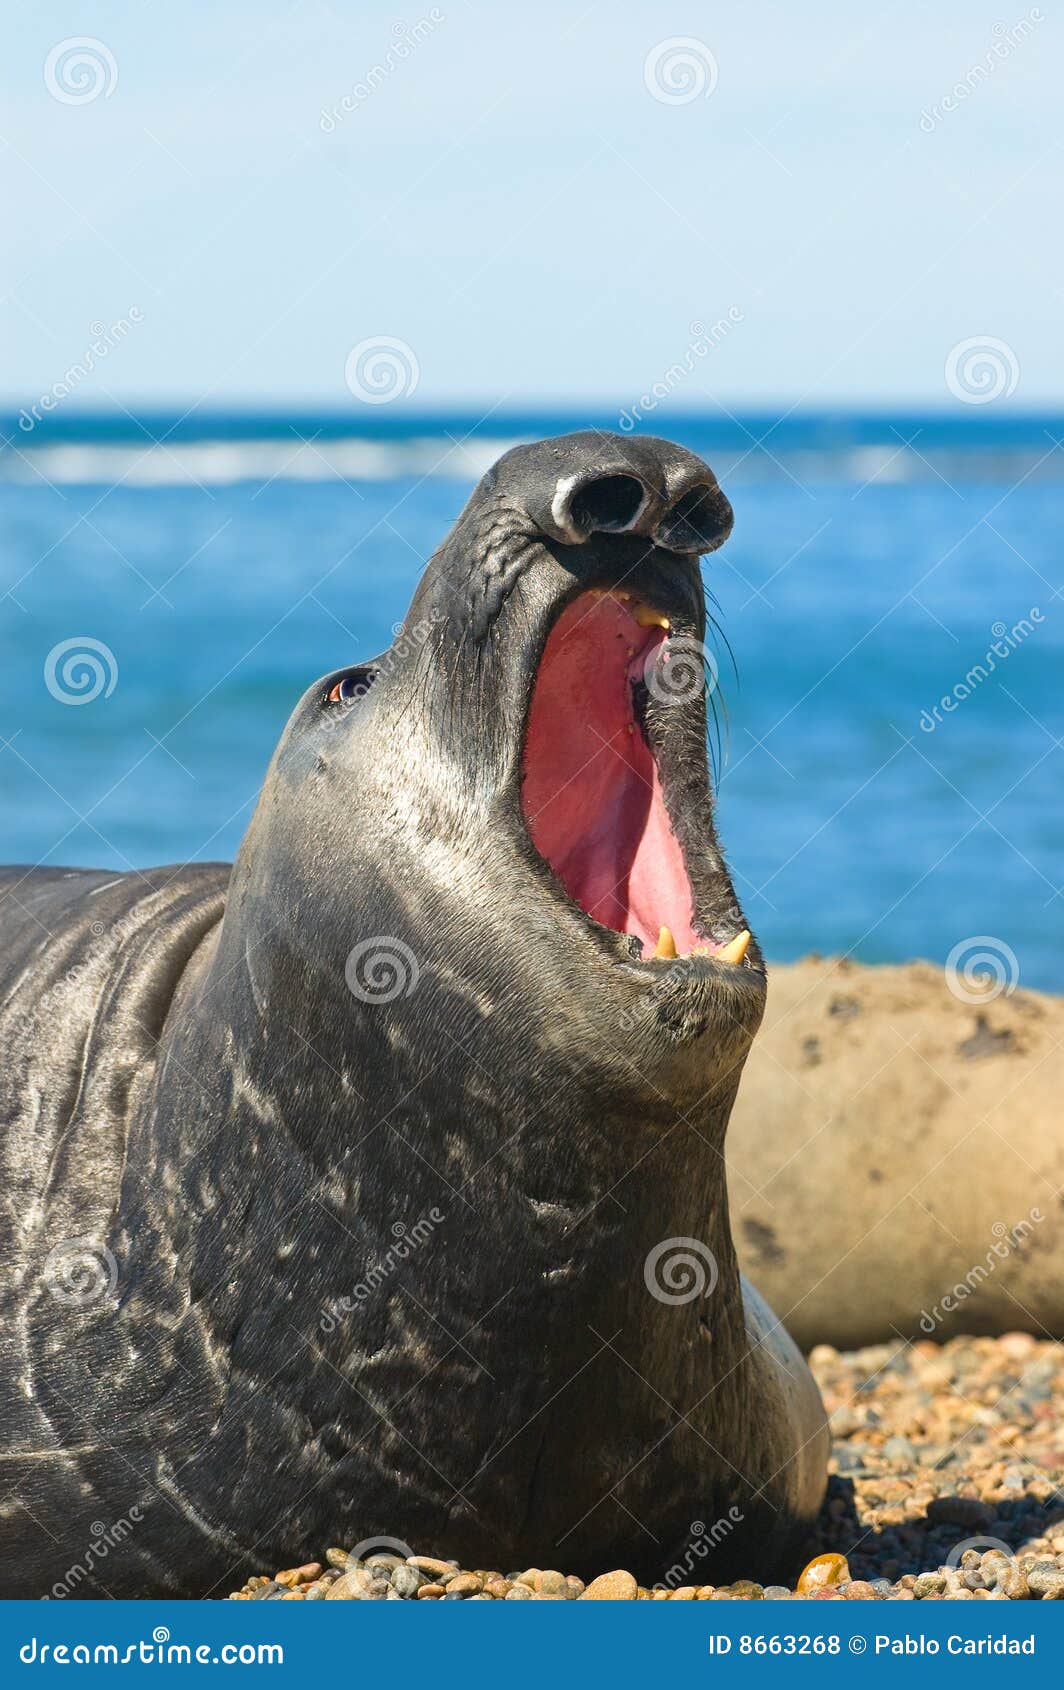 elephant seal in peninsula valdes, patagonia.